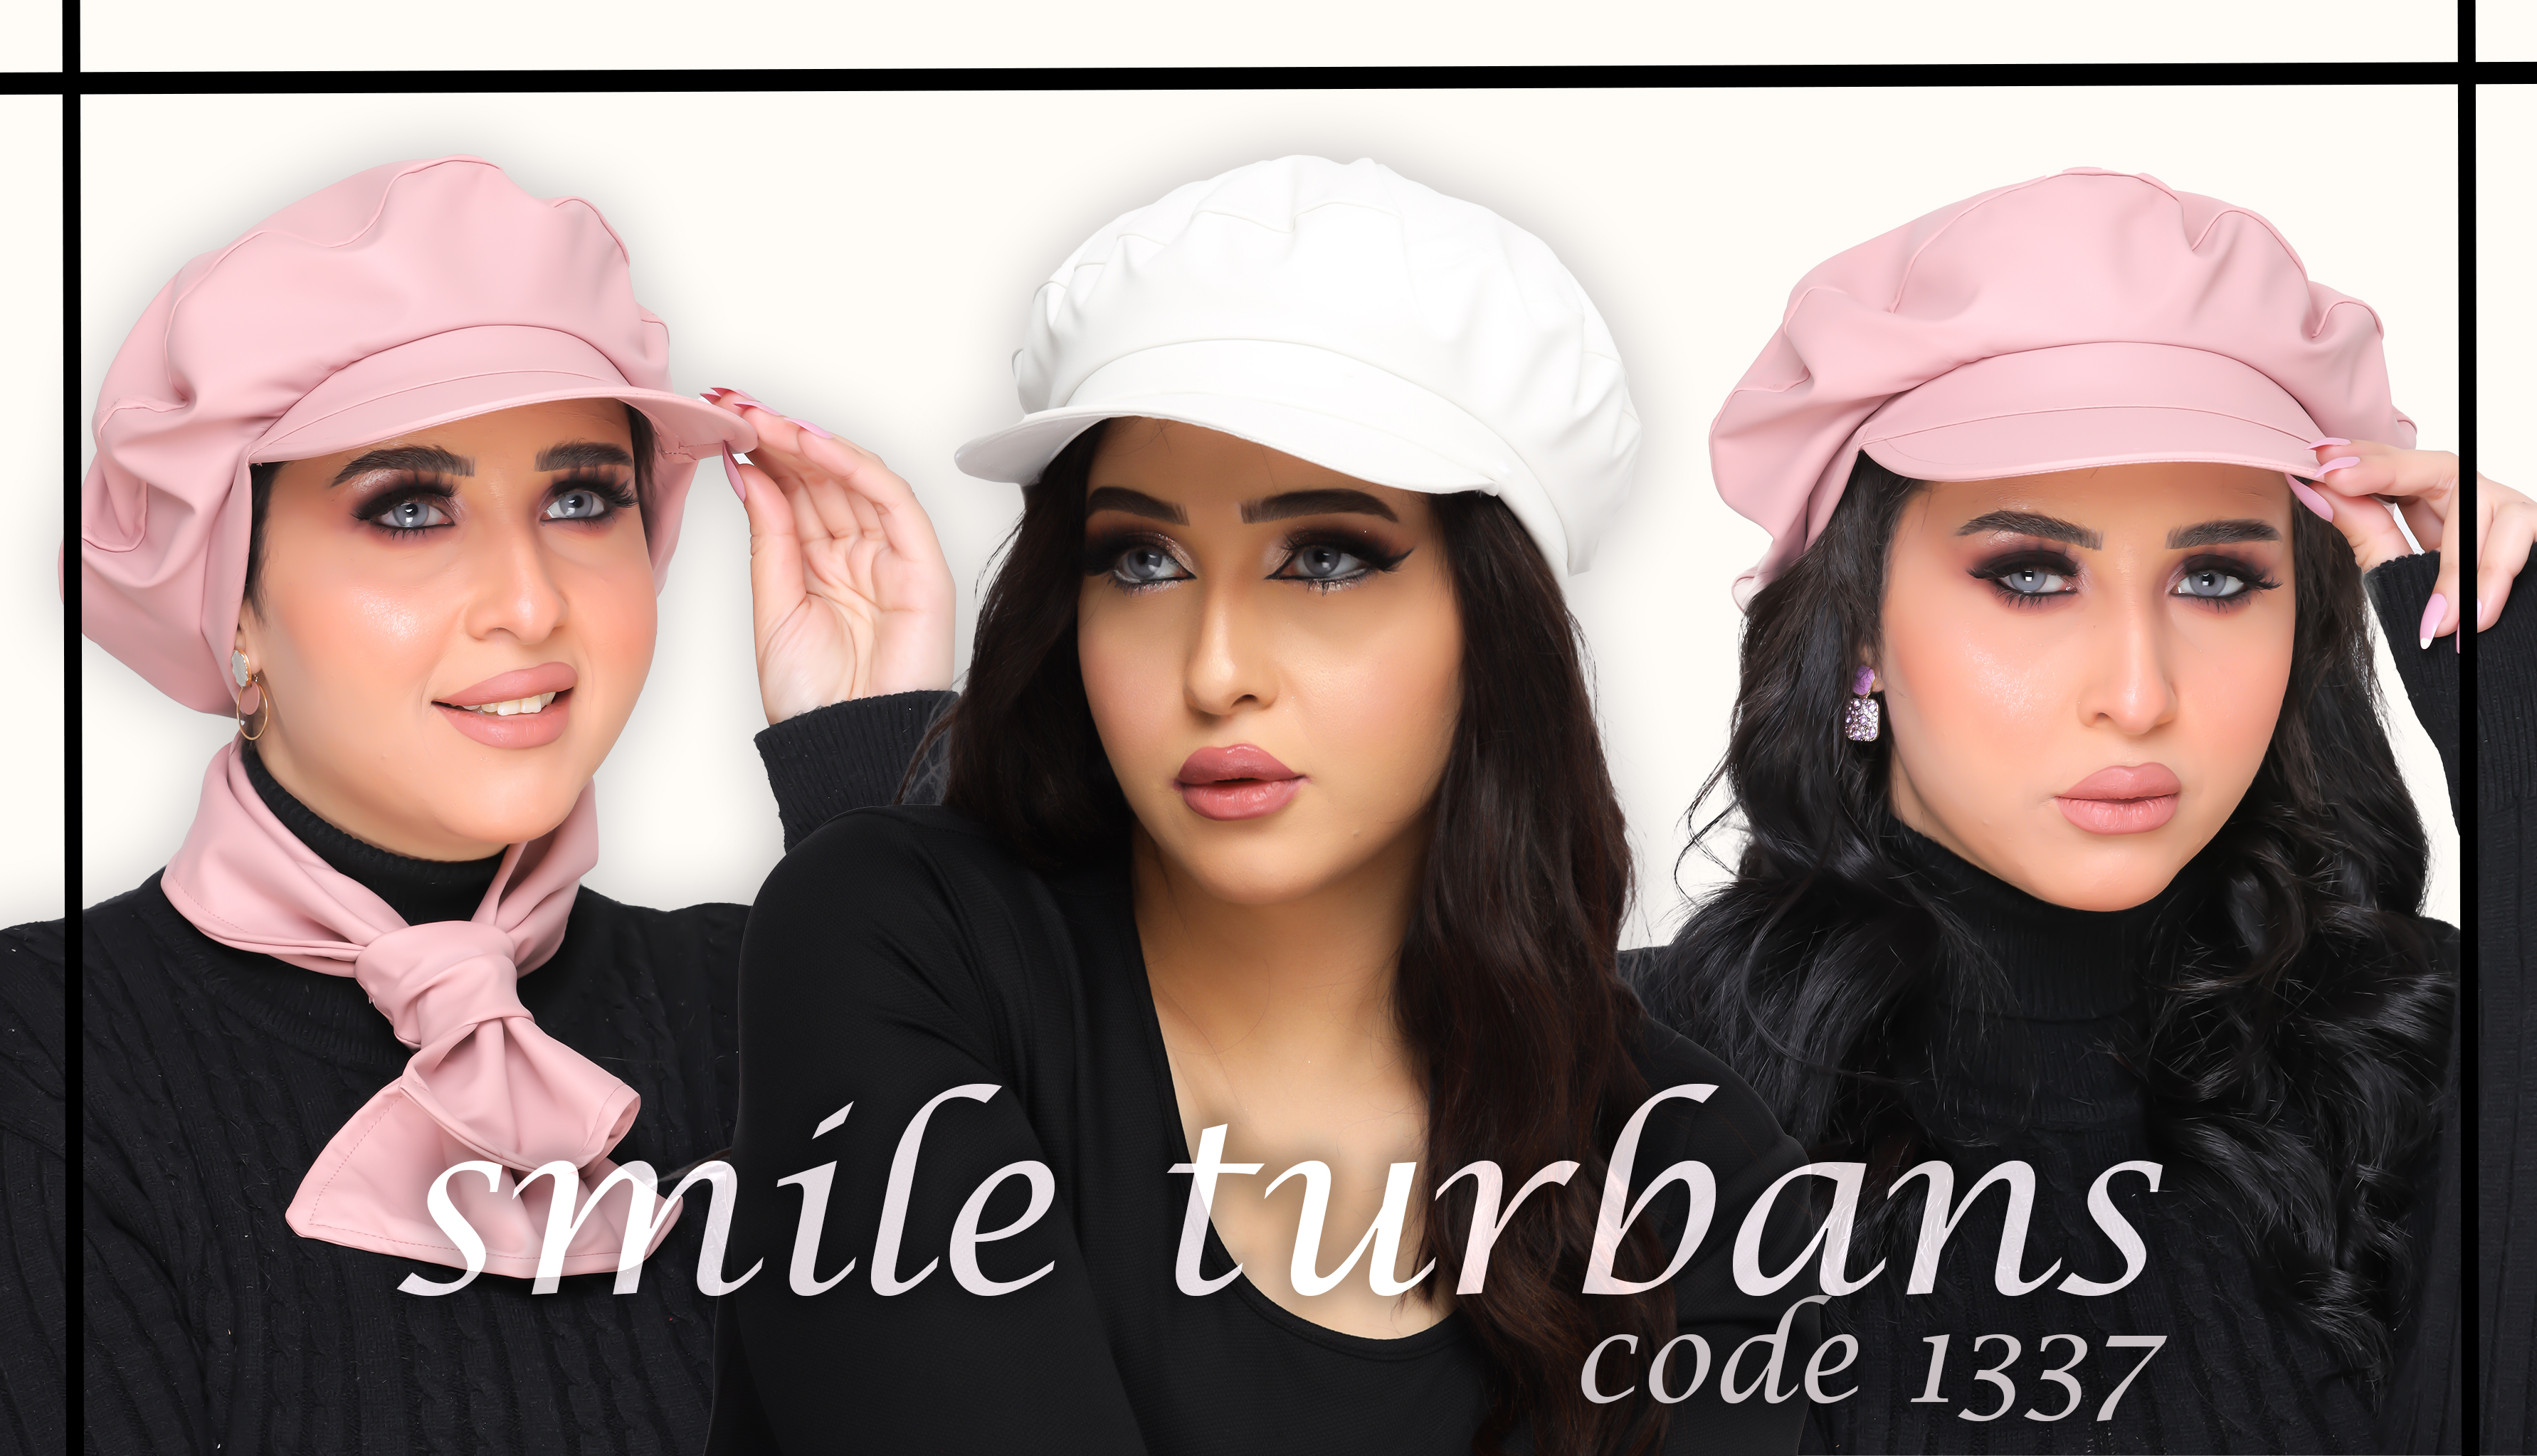 Smile Turbans promo